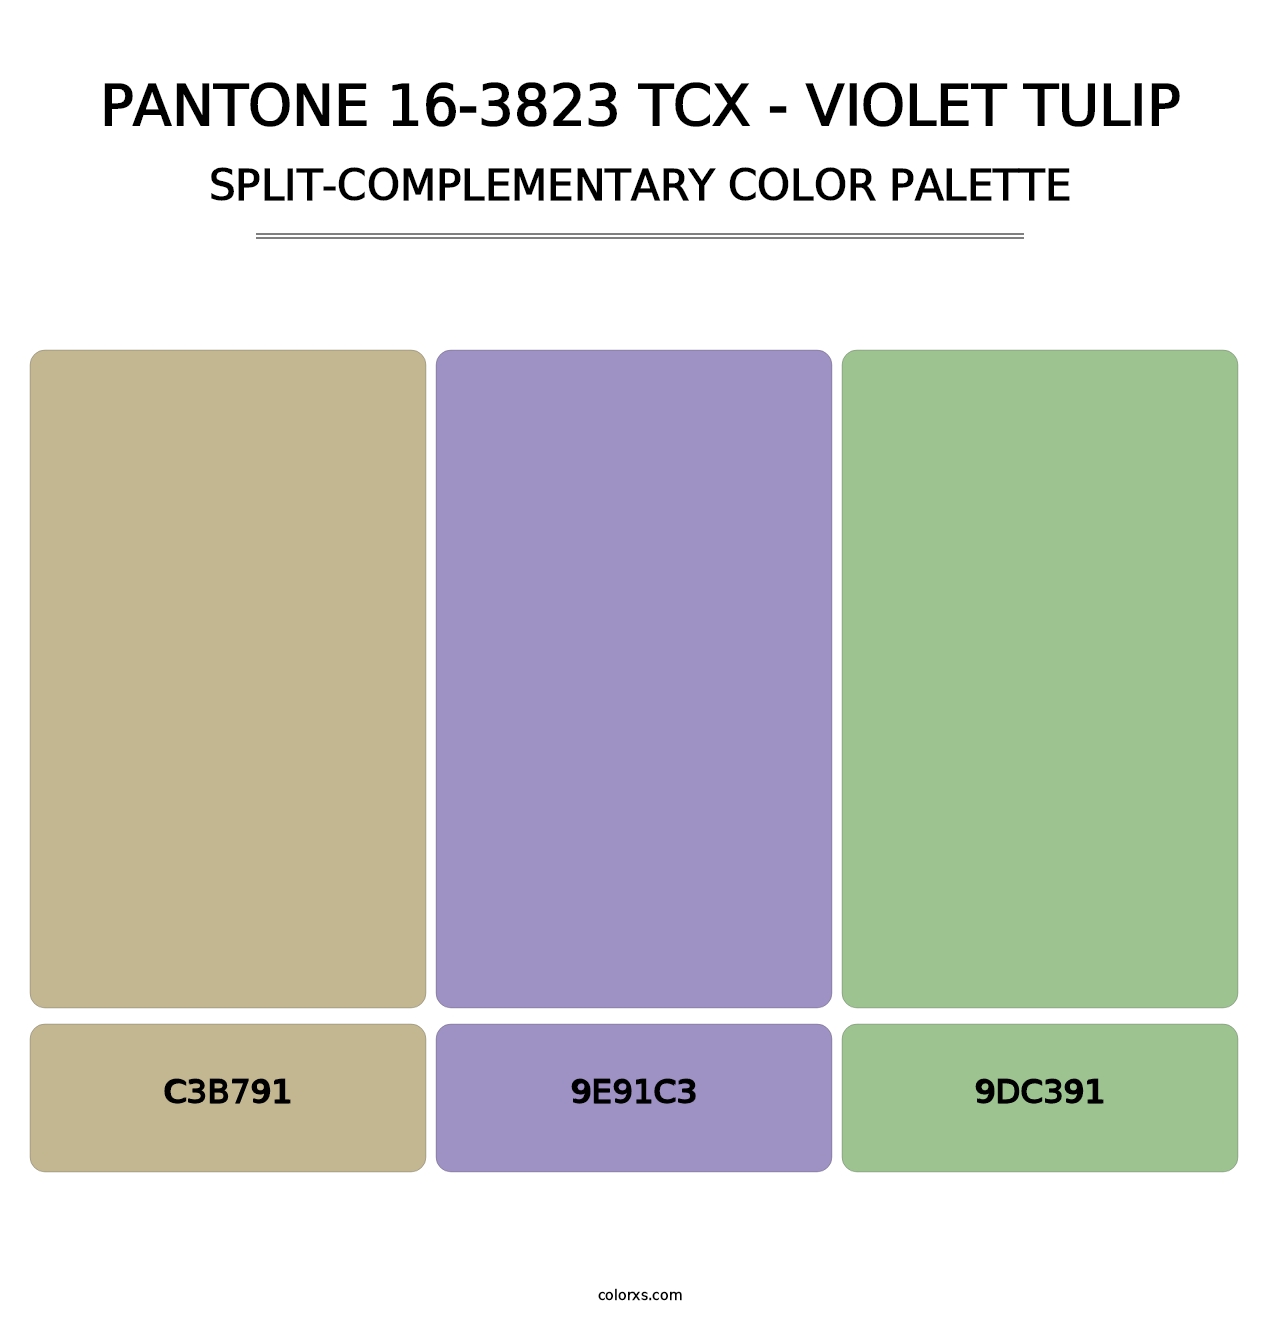 PANTONE 16-3823 TCX - Violet Tulip - Split-Complementary Color Palette